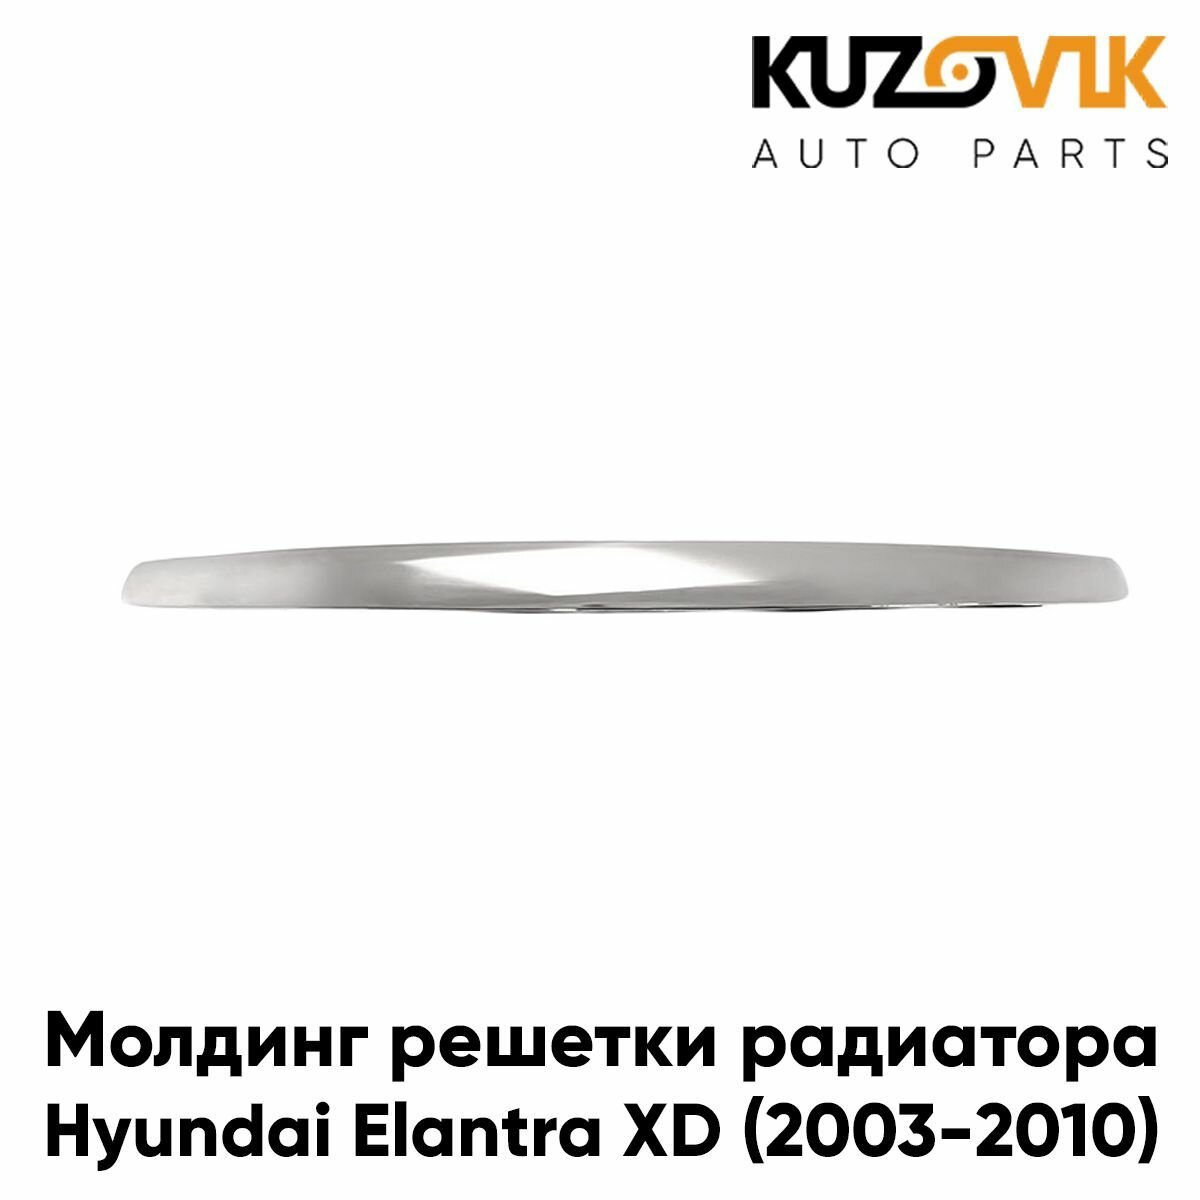 Молдинг решетки радиатора для Хендай Элантра Hyundai Elantra XD (2003-2010) рестайлинг хром